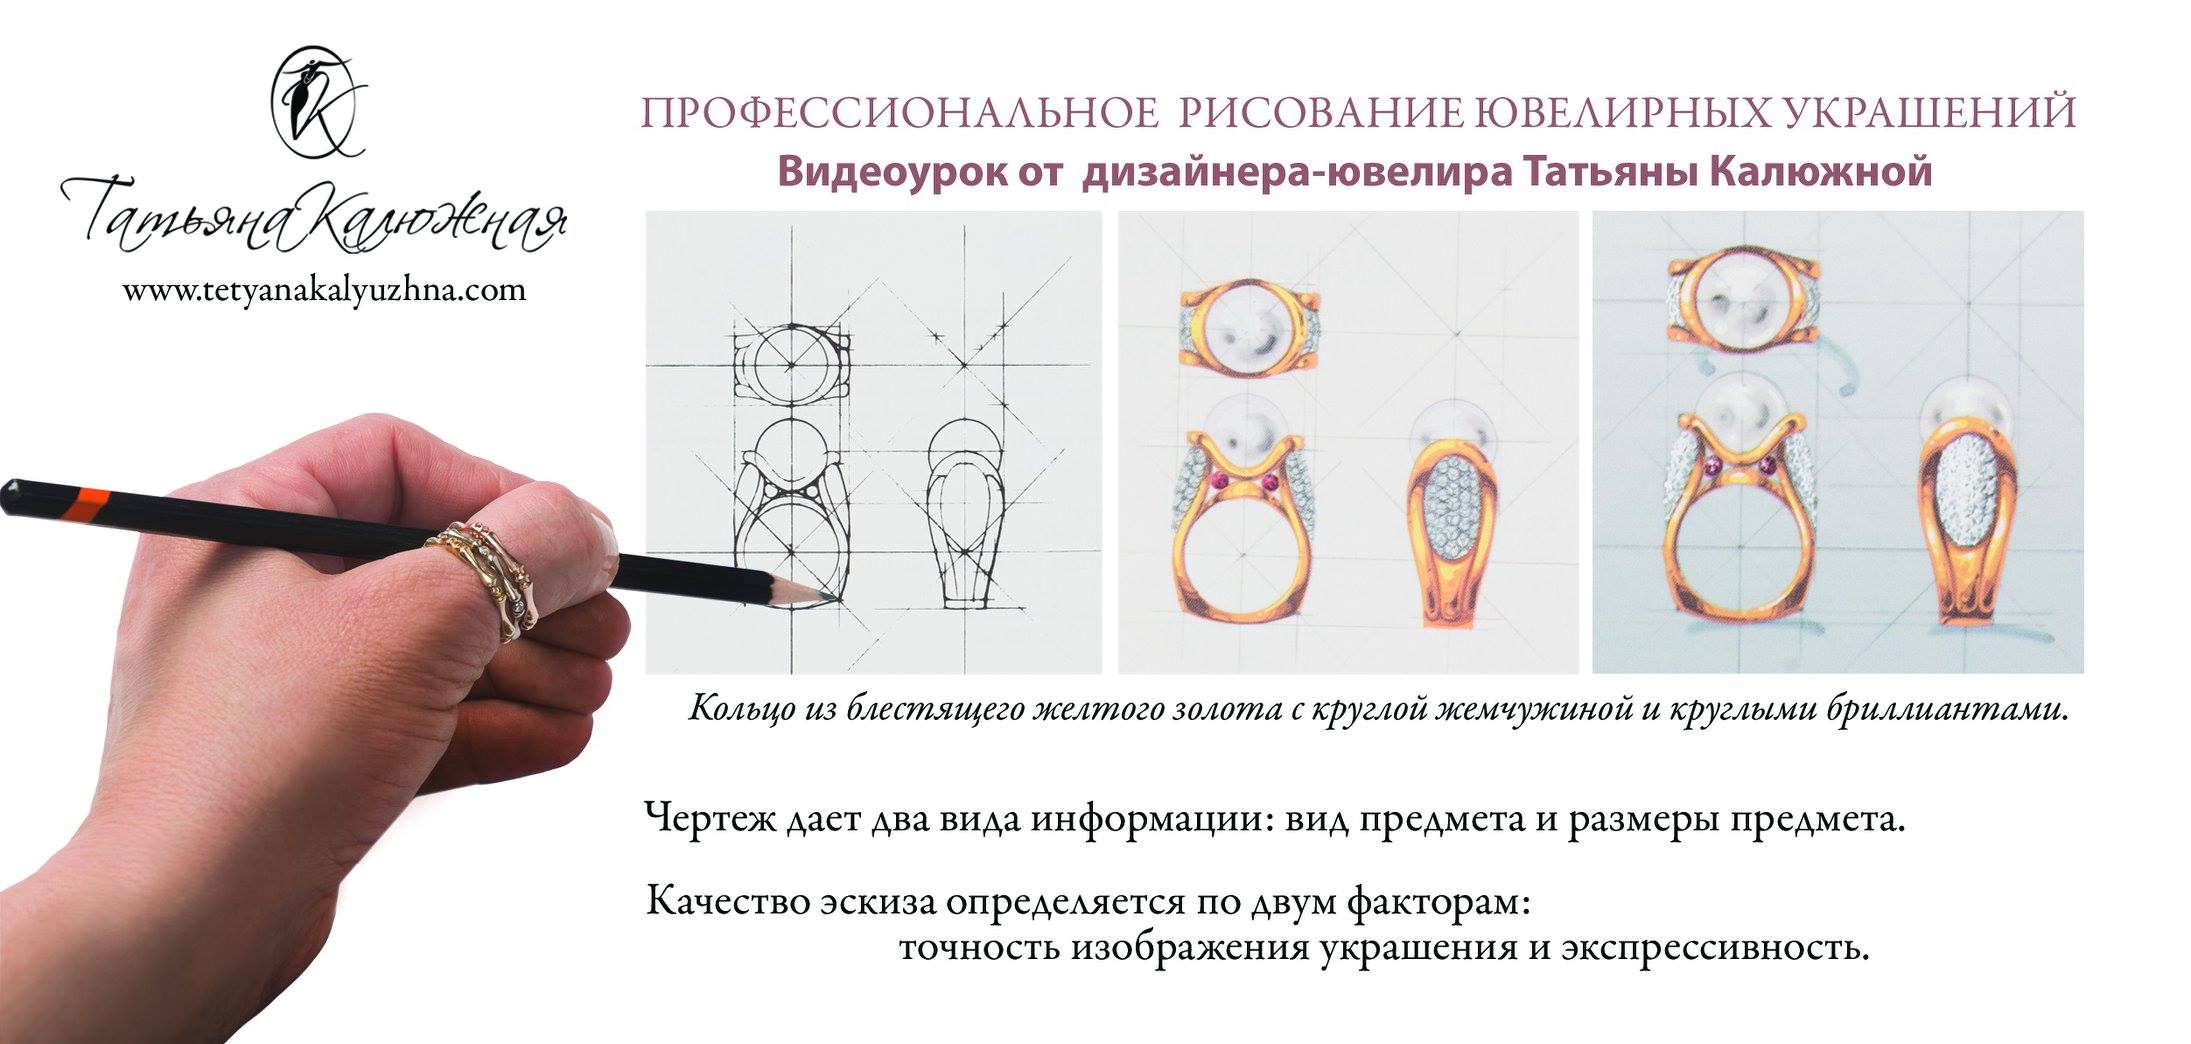 Переселенка из Донецка Татьяна Калюжная более 20 лет изготавливает ювелирные украшения и арт объекты из природных камней и минералов